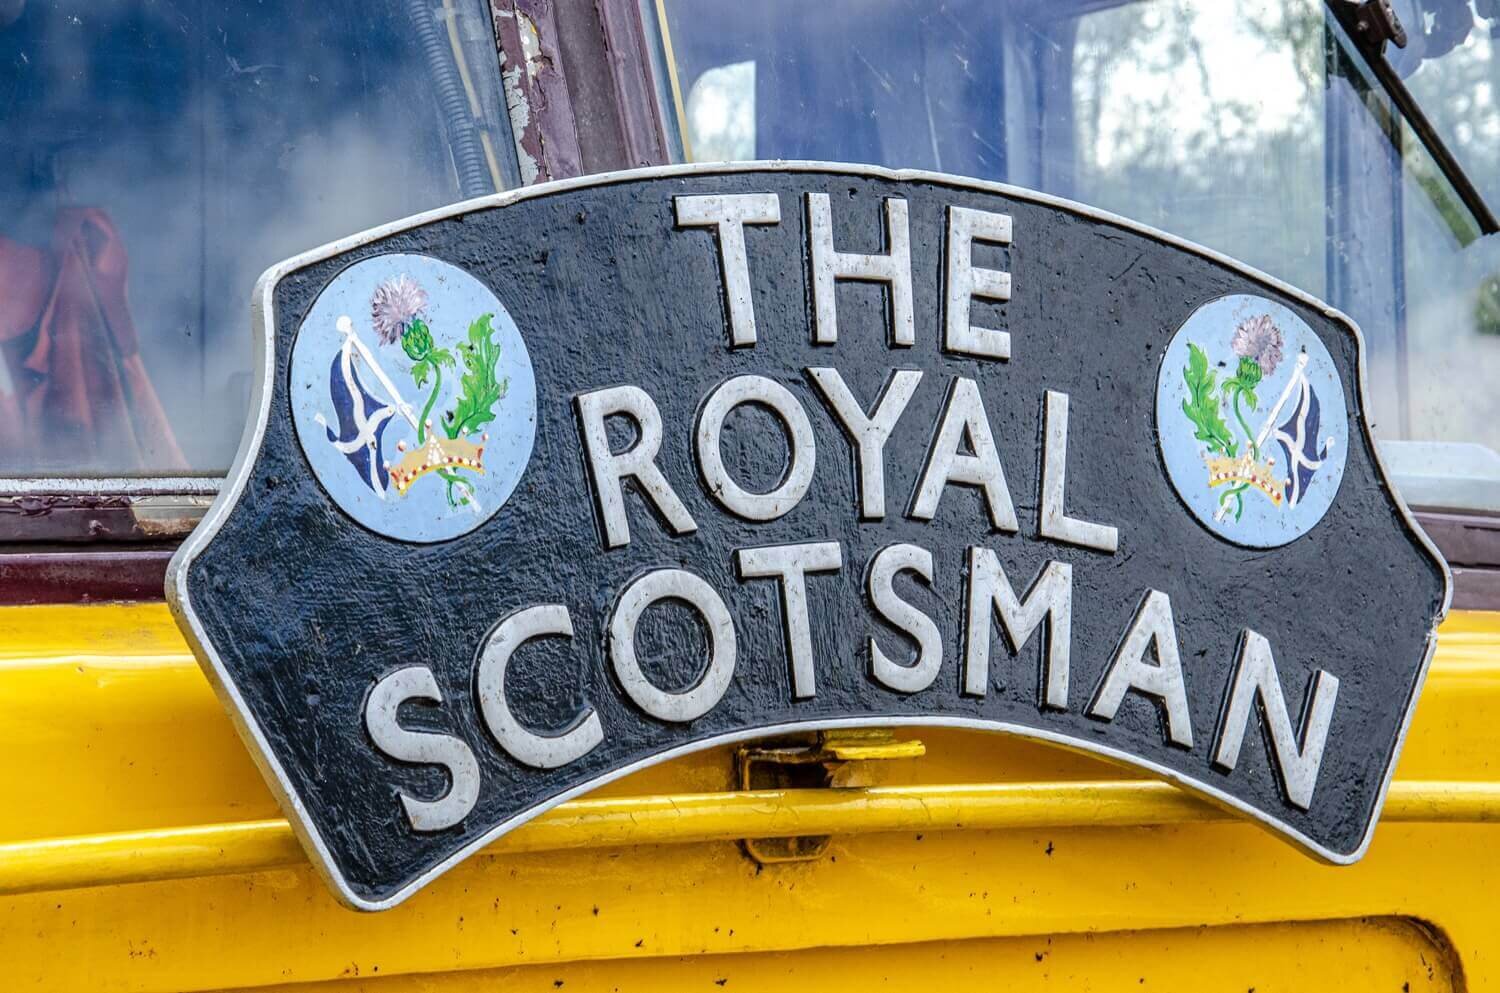 Placa del Royal Scotsman en la locomotora del tren. Viaje en tren por el norte de Escocia. Turismo en las Tierras Altas de Escocia.